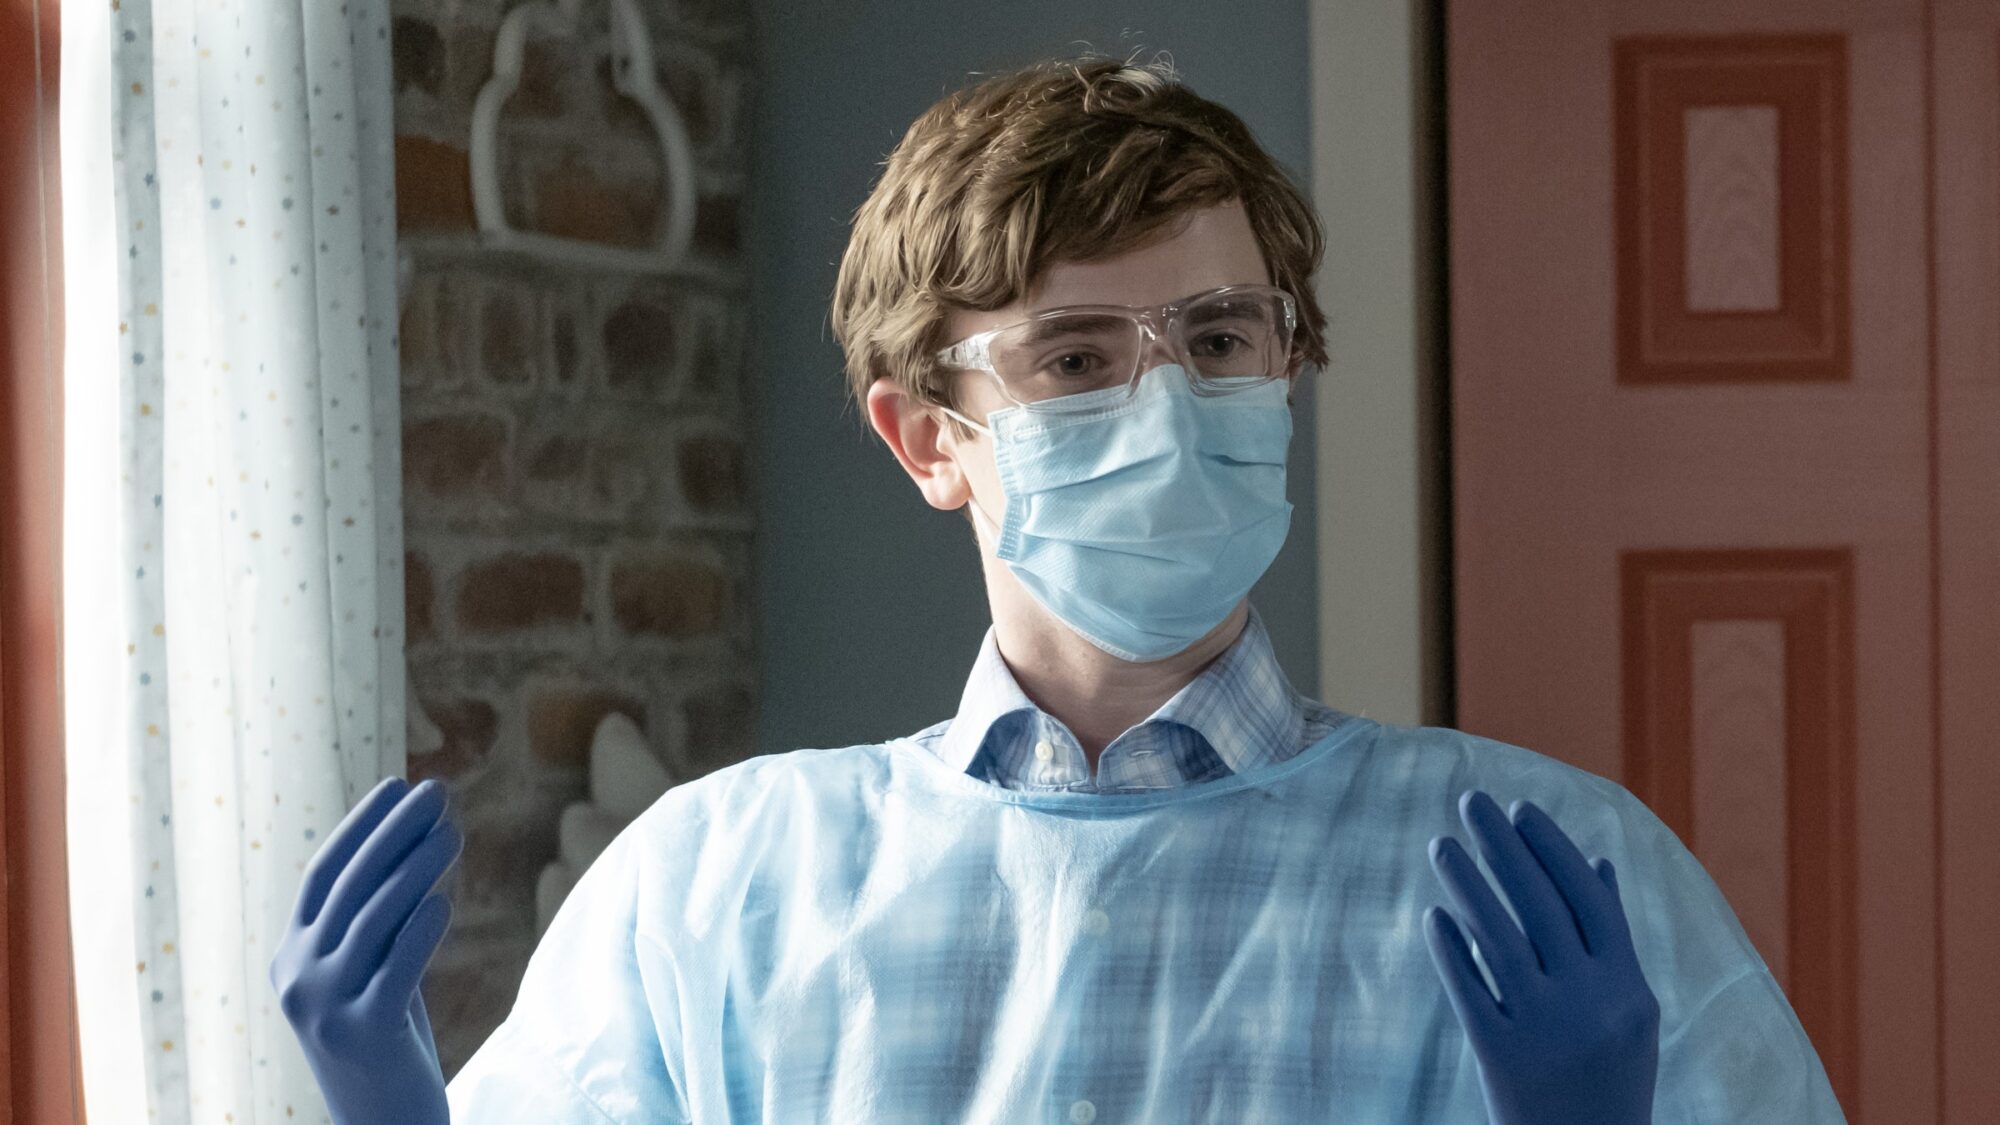 good doctor saison 7 netflix - Good Doctor : quand peut-on espérer voir la saison 7 sur Netflix (Date de sortie estimée en France)